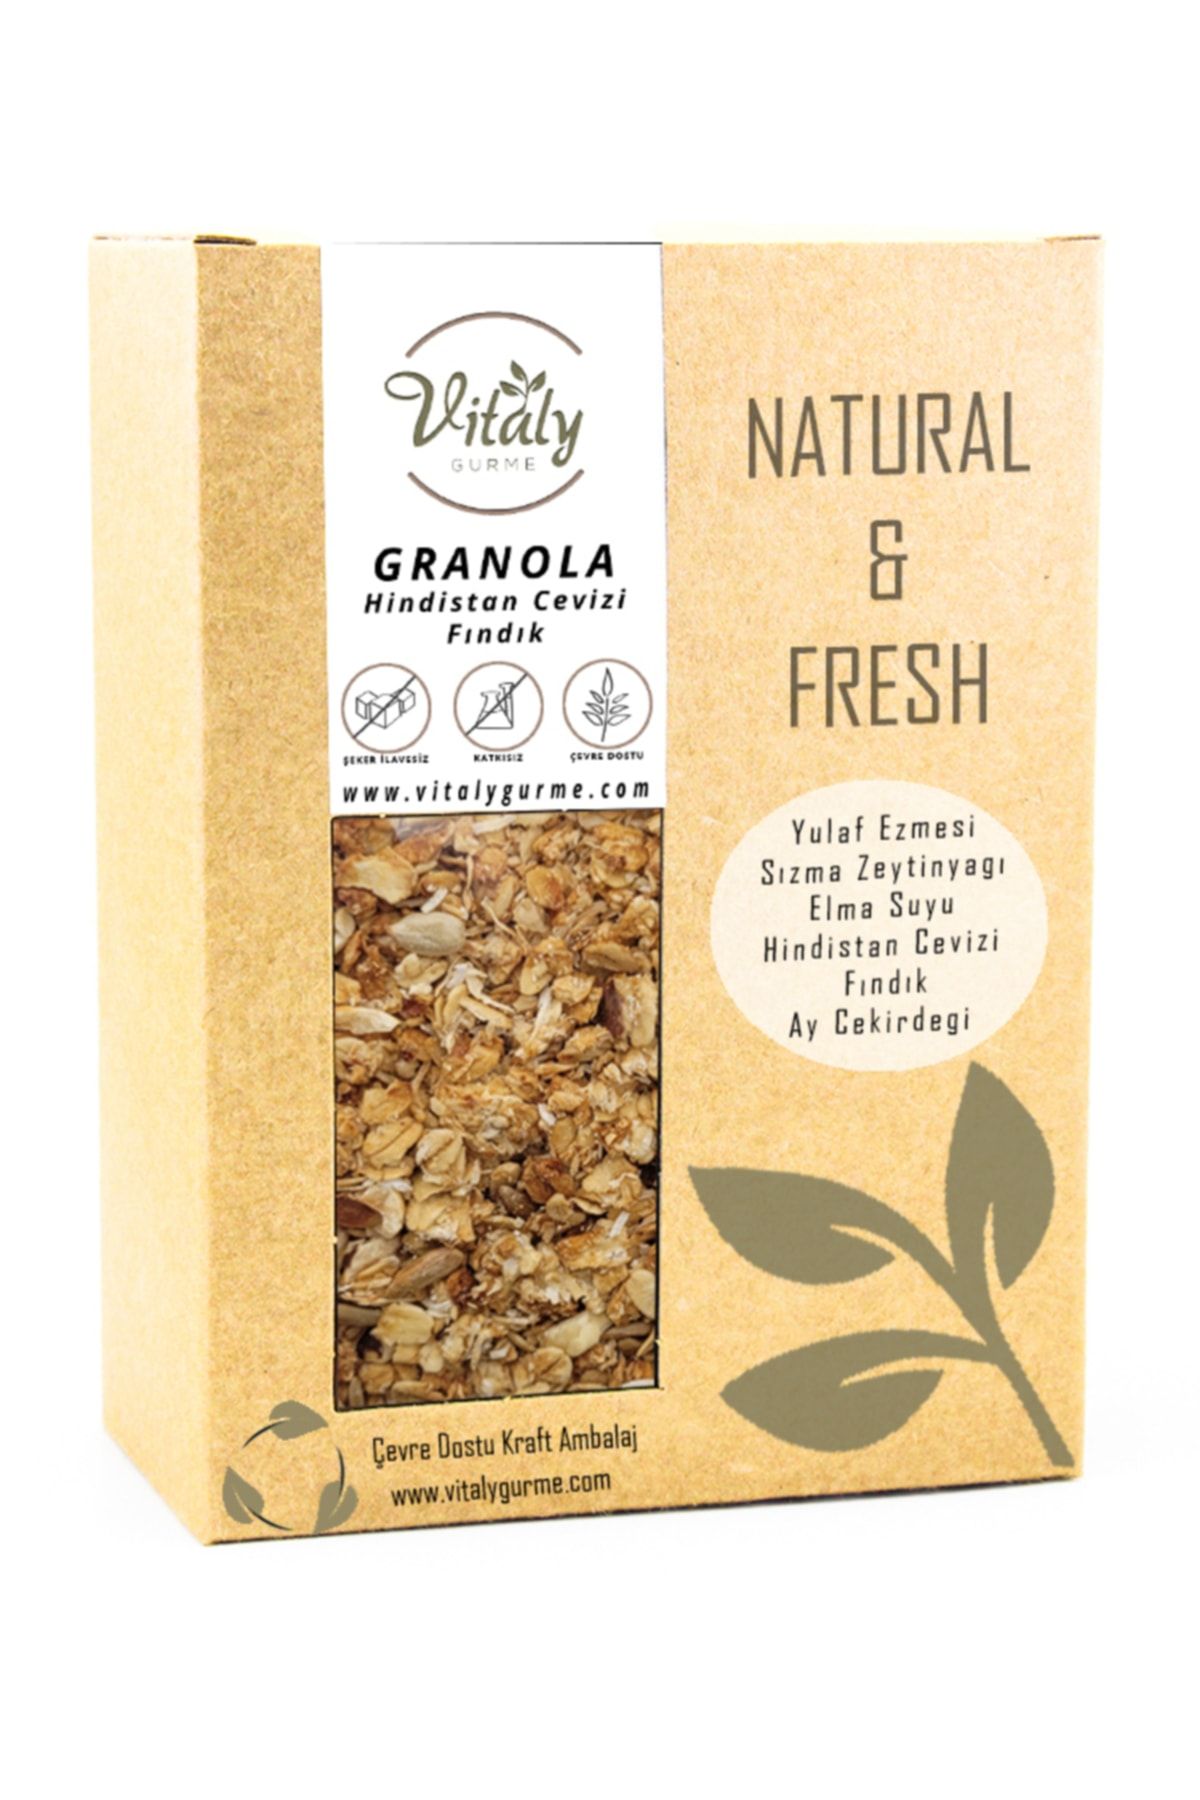 Vitaly Gurme Doğal Katkısız Granola Hindistan Cevizi - Fındık 320g